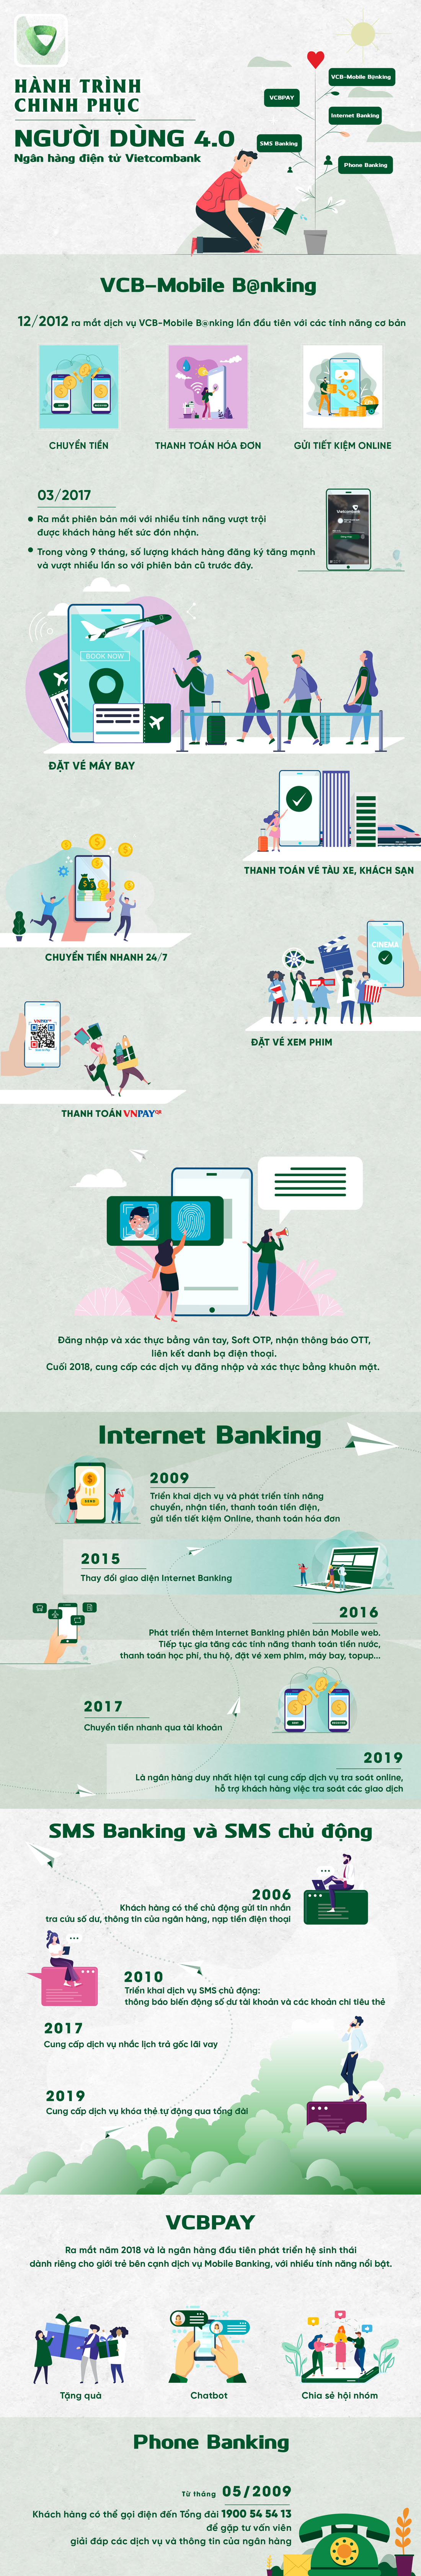 Hành trình chinh phục người dùng 4.0 của Ngân hàng điện tử Vietcombank - Ảnh 1.